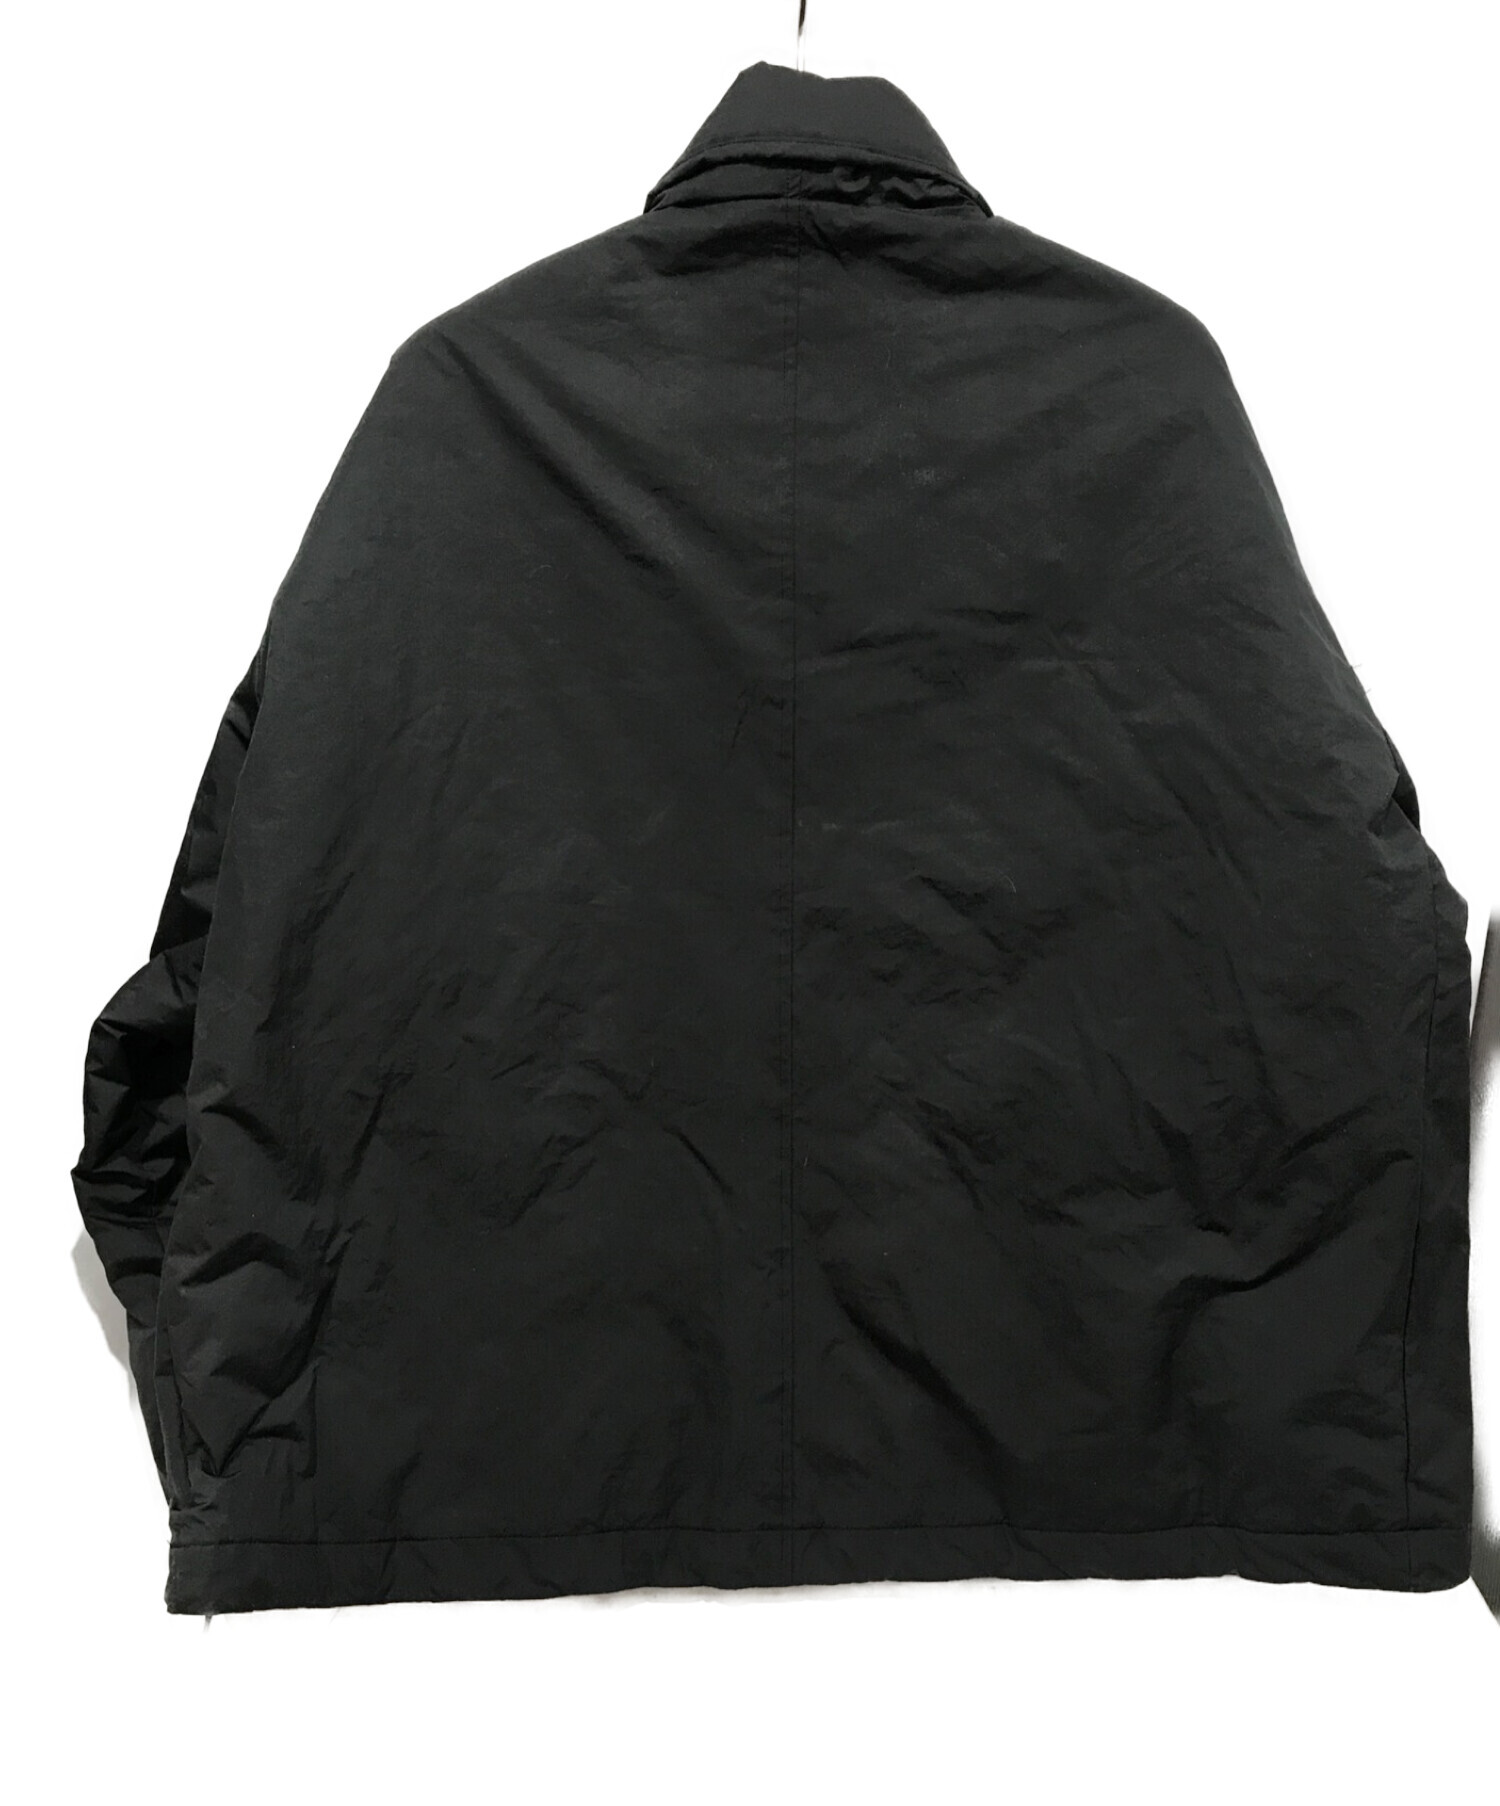 TIGHTBOOTH Jacket 新品未使用 サイズ XL素材